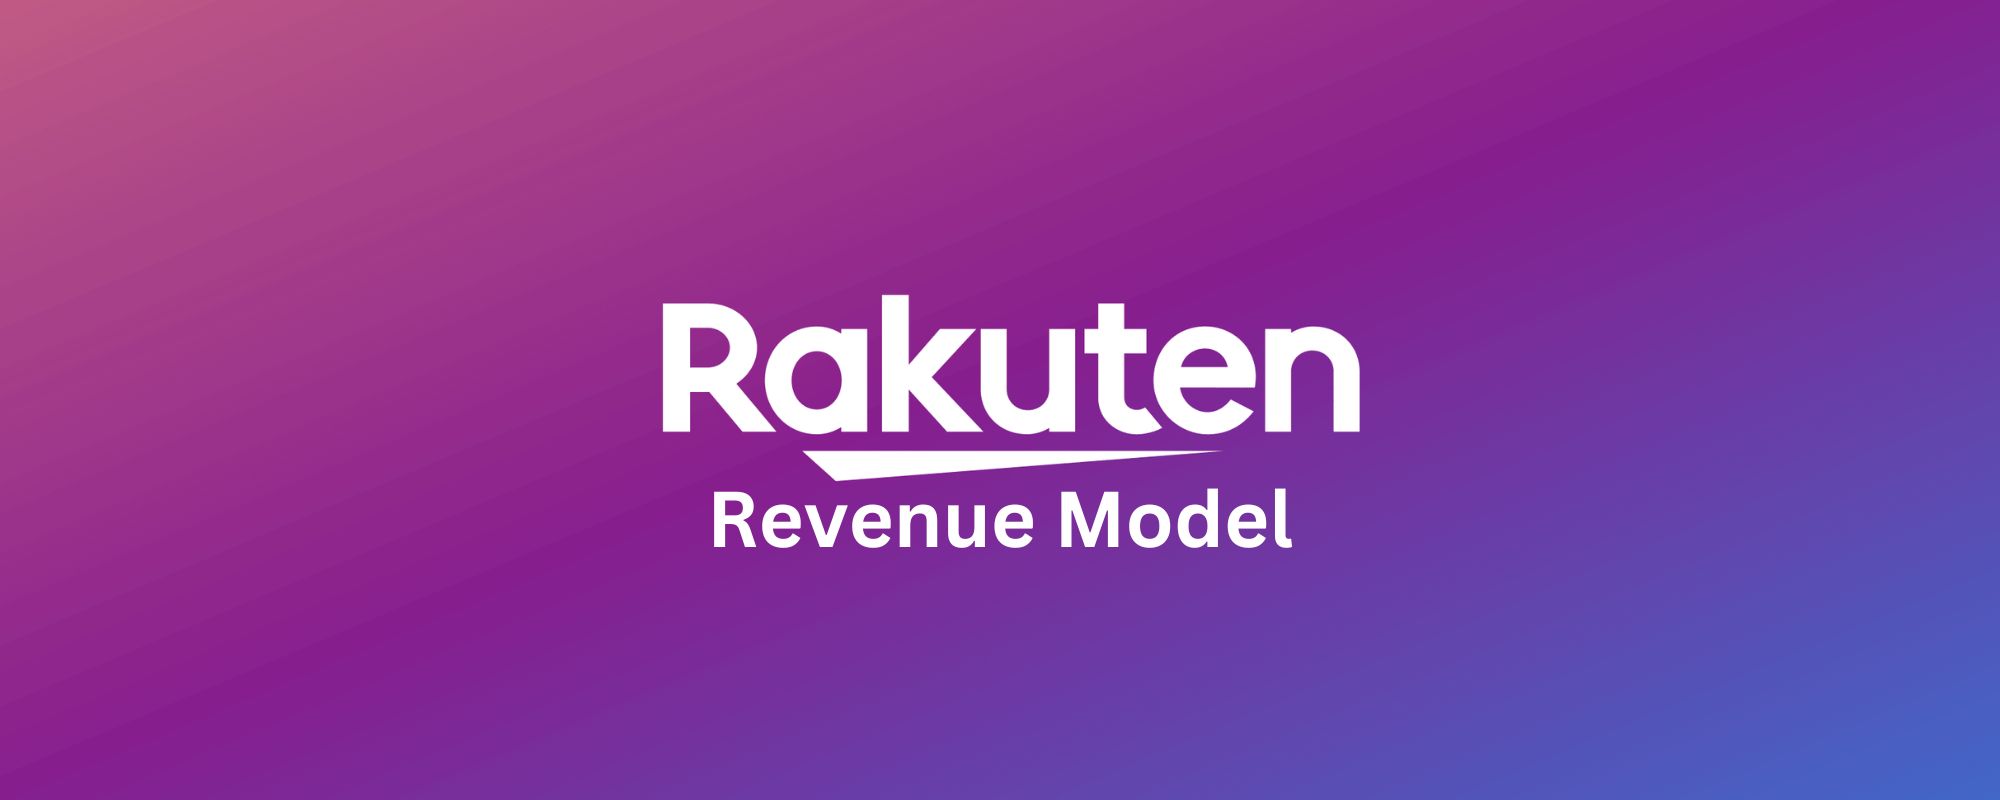 explaining how rakuten revenue model works